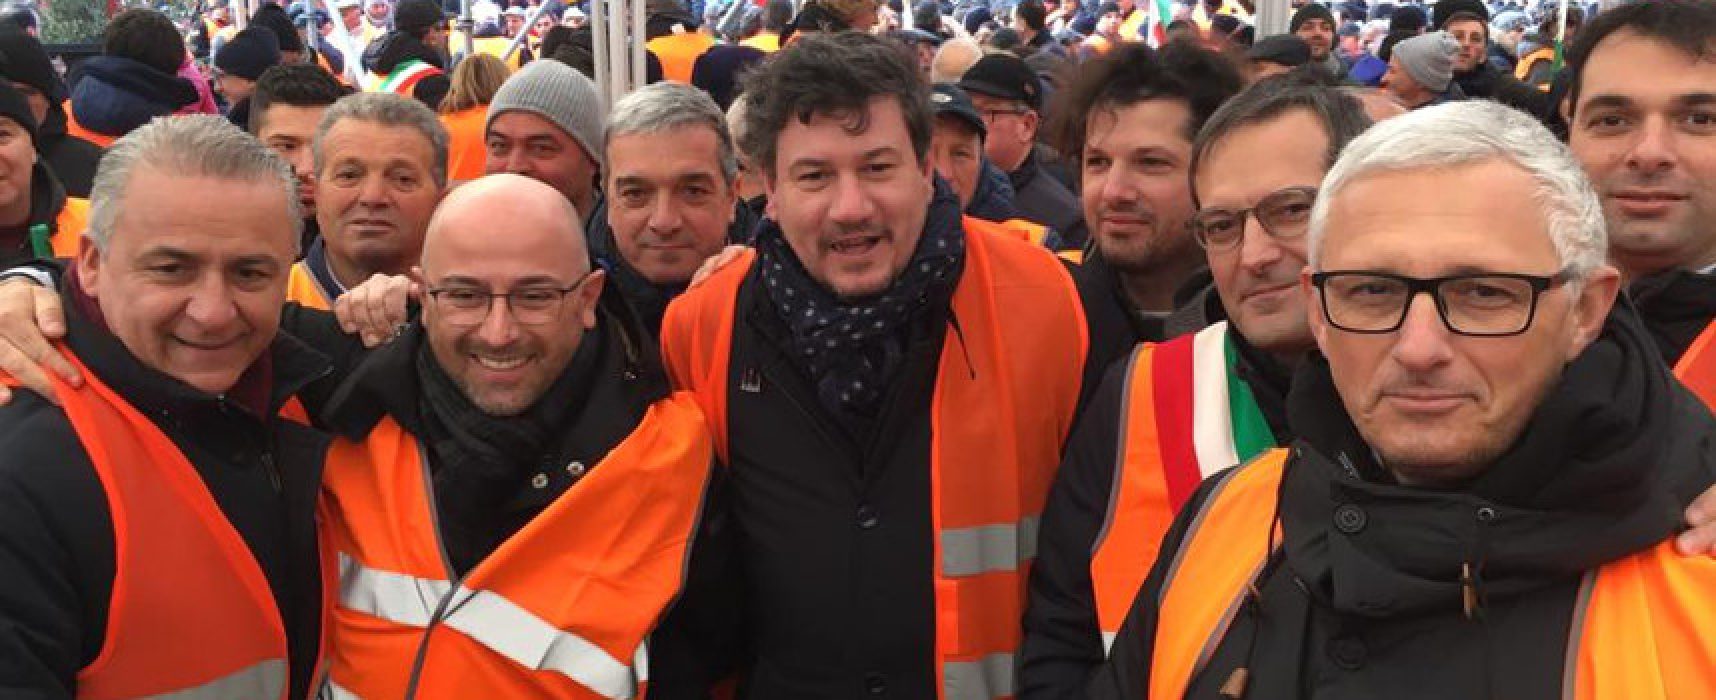 Sindaco Angarano, vicesindaco Consiglio e Sergio Silvestris in piazza con i gilet arancioni